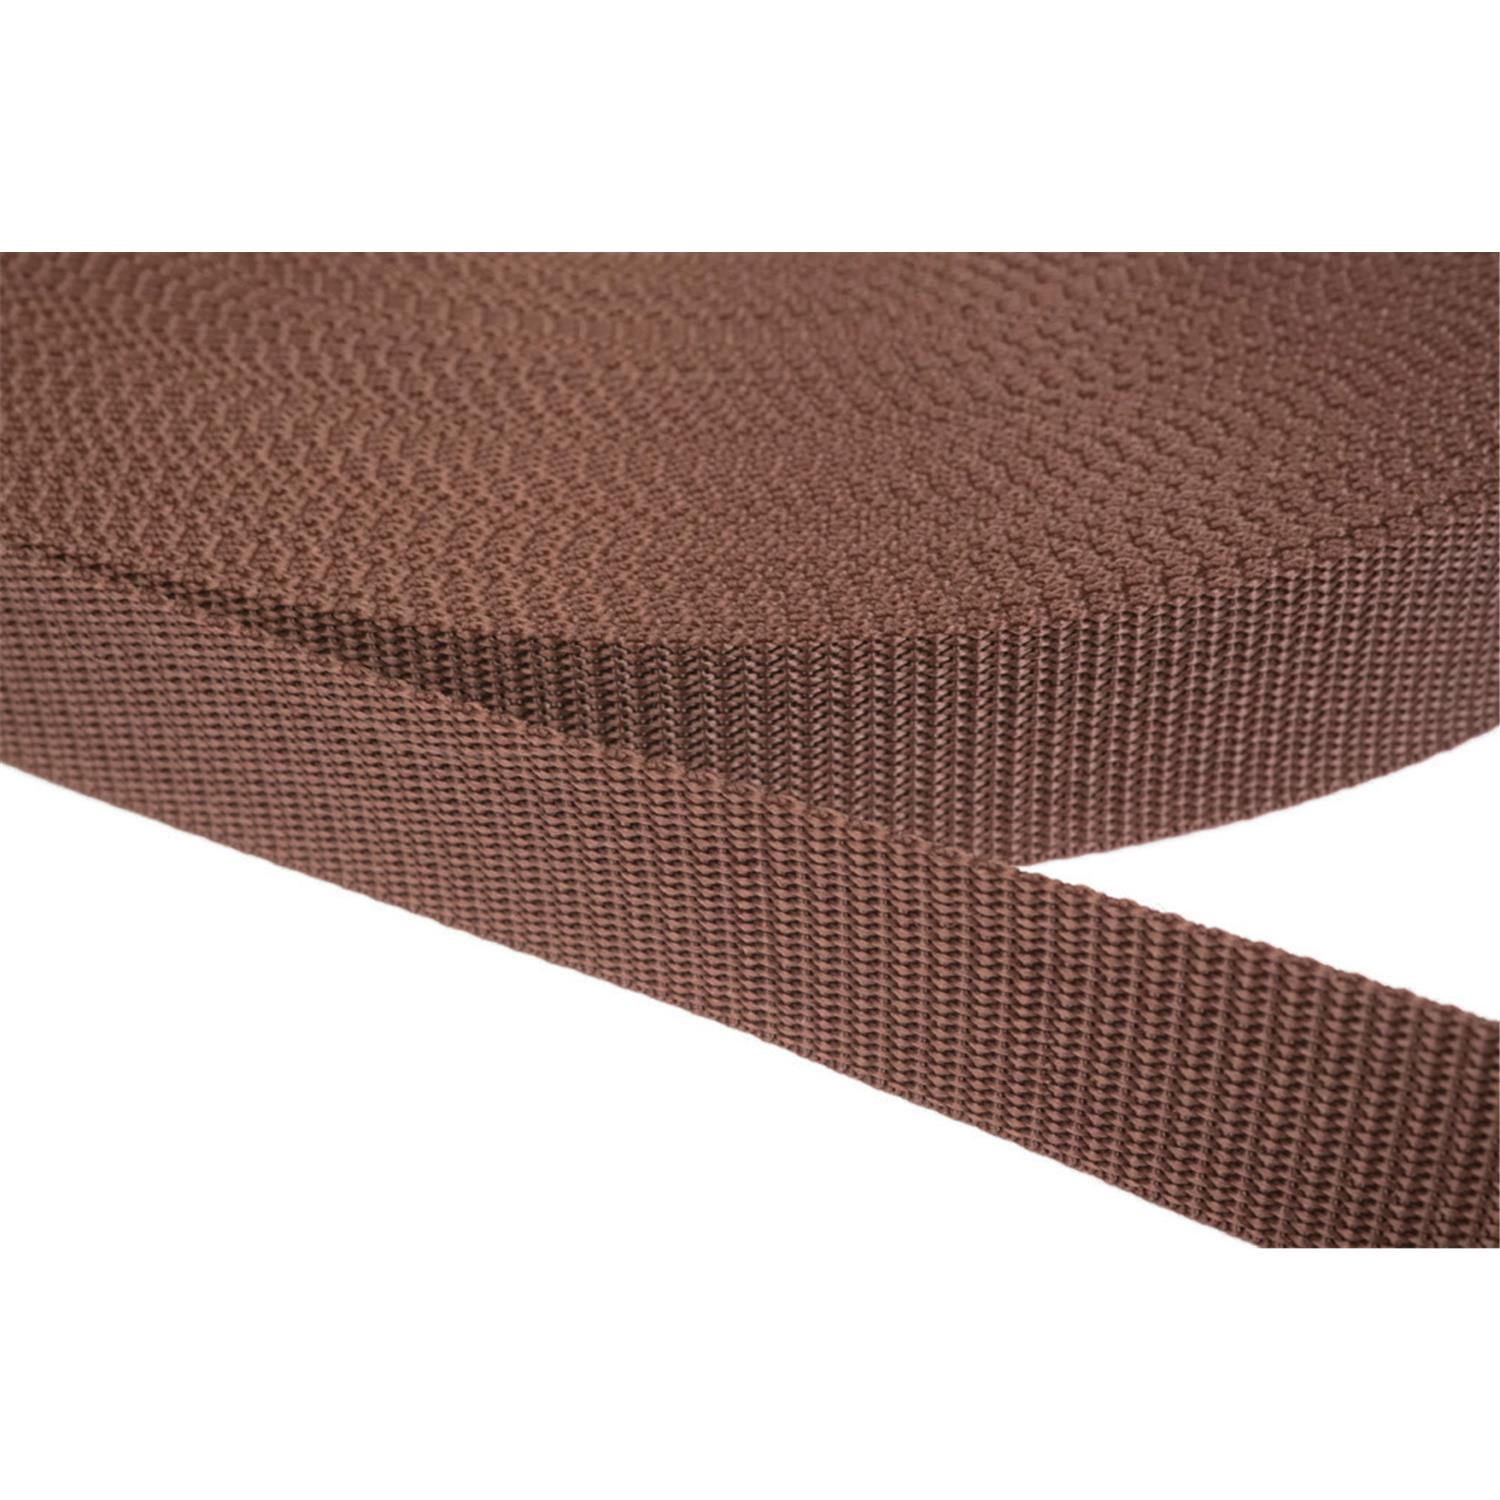 Gurtband 10mm breit aus Polypropylen in 41 Farben 07 - braun 12 Meter